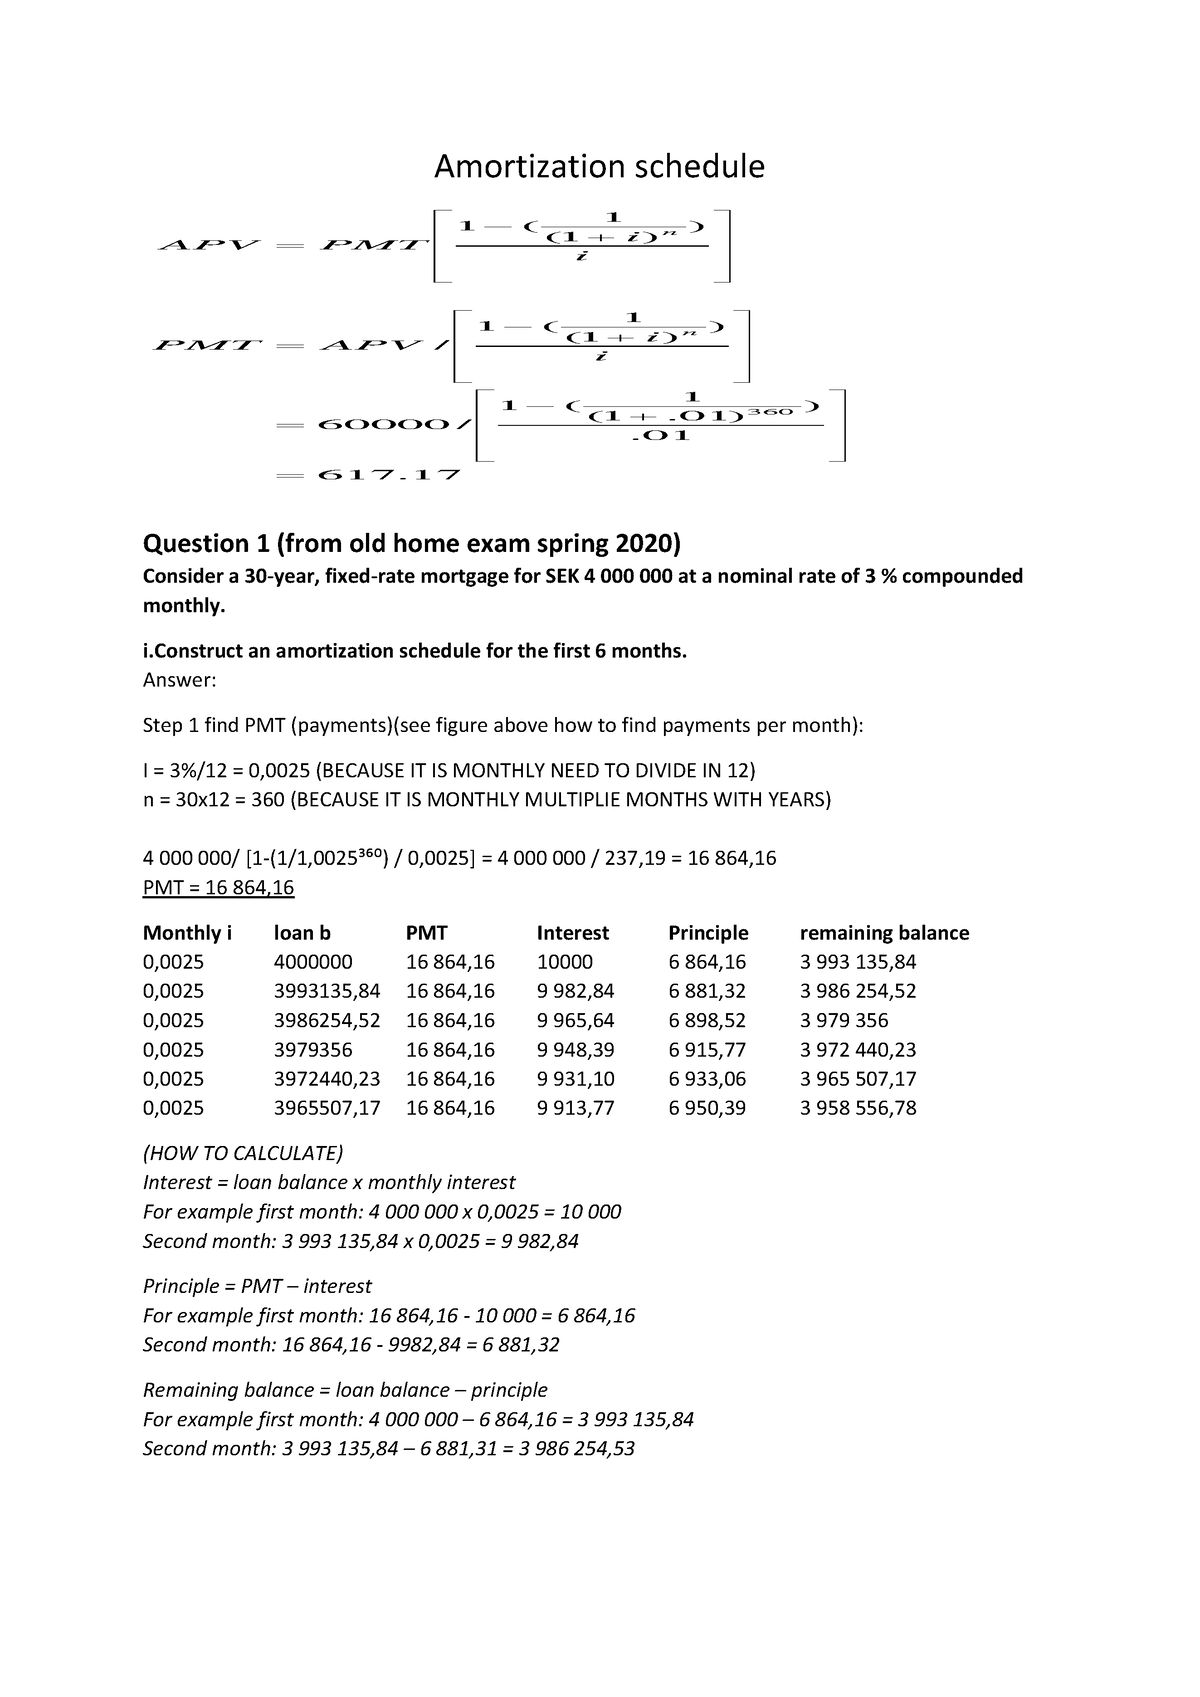 amortization-schedule-calculate-amortization-schedule-1-1-01